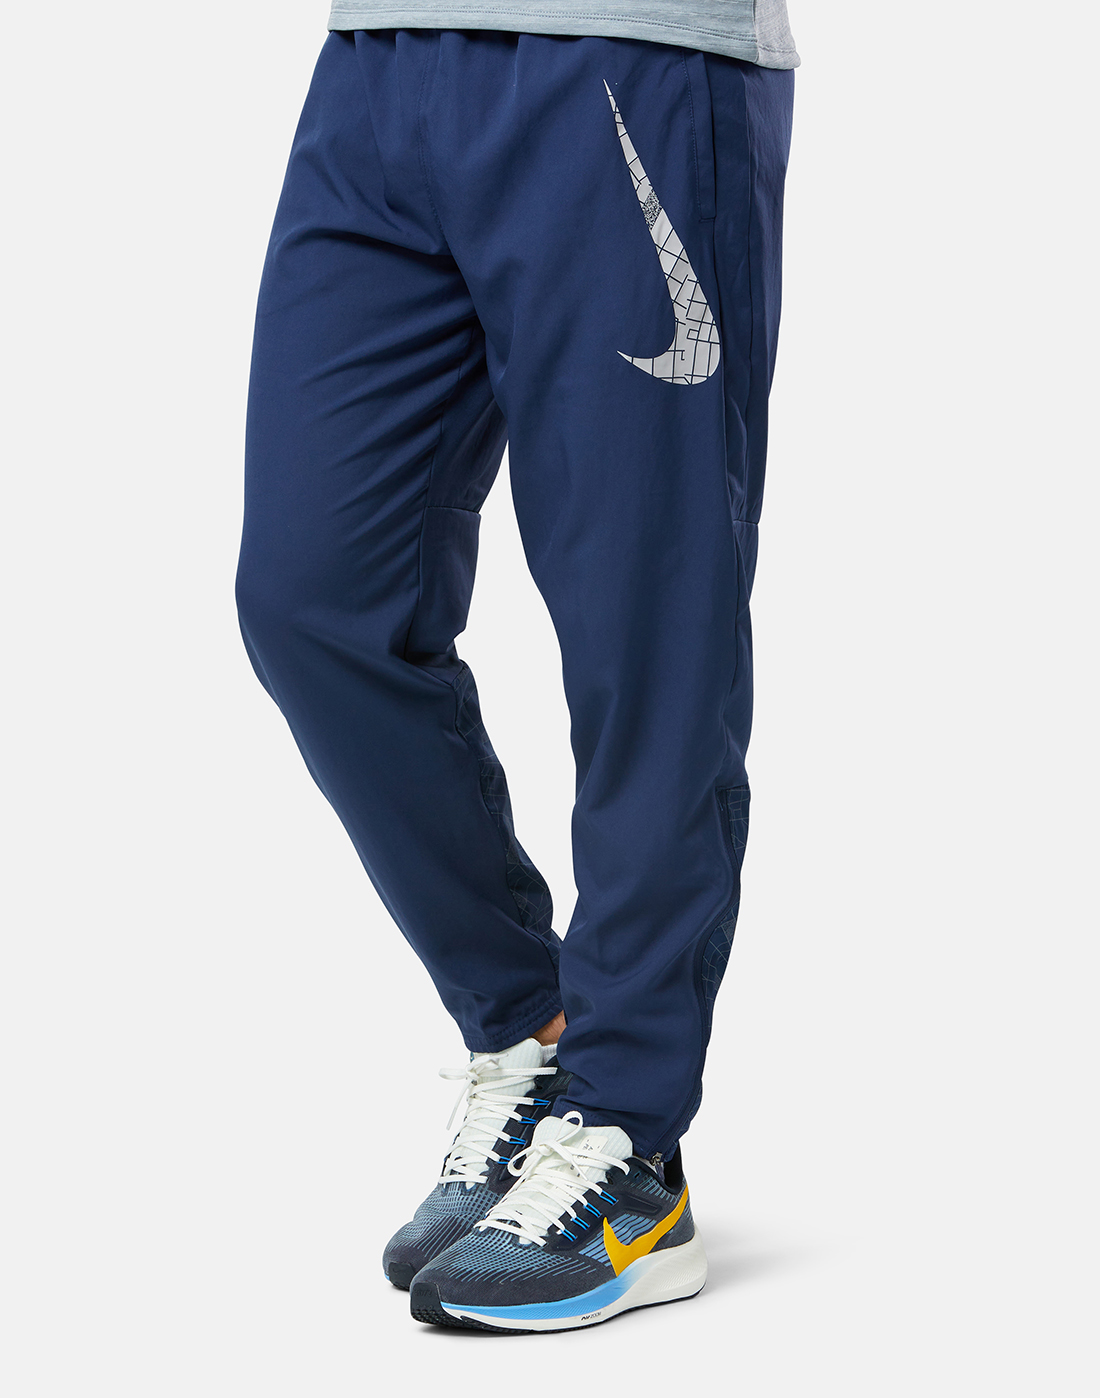 Nike Mens Run Division Challenger Flash Reflective Pants - Navy | Life ...